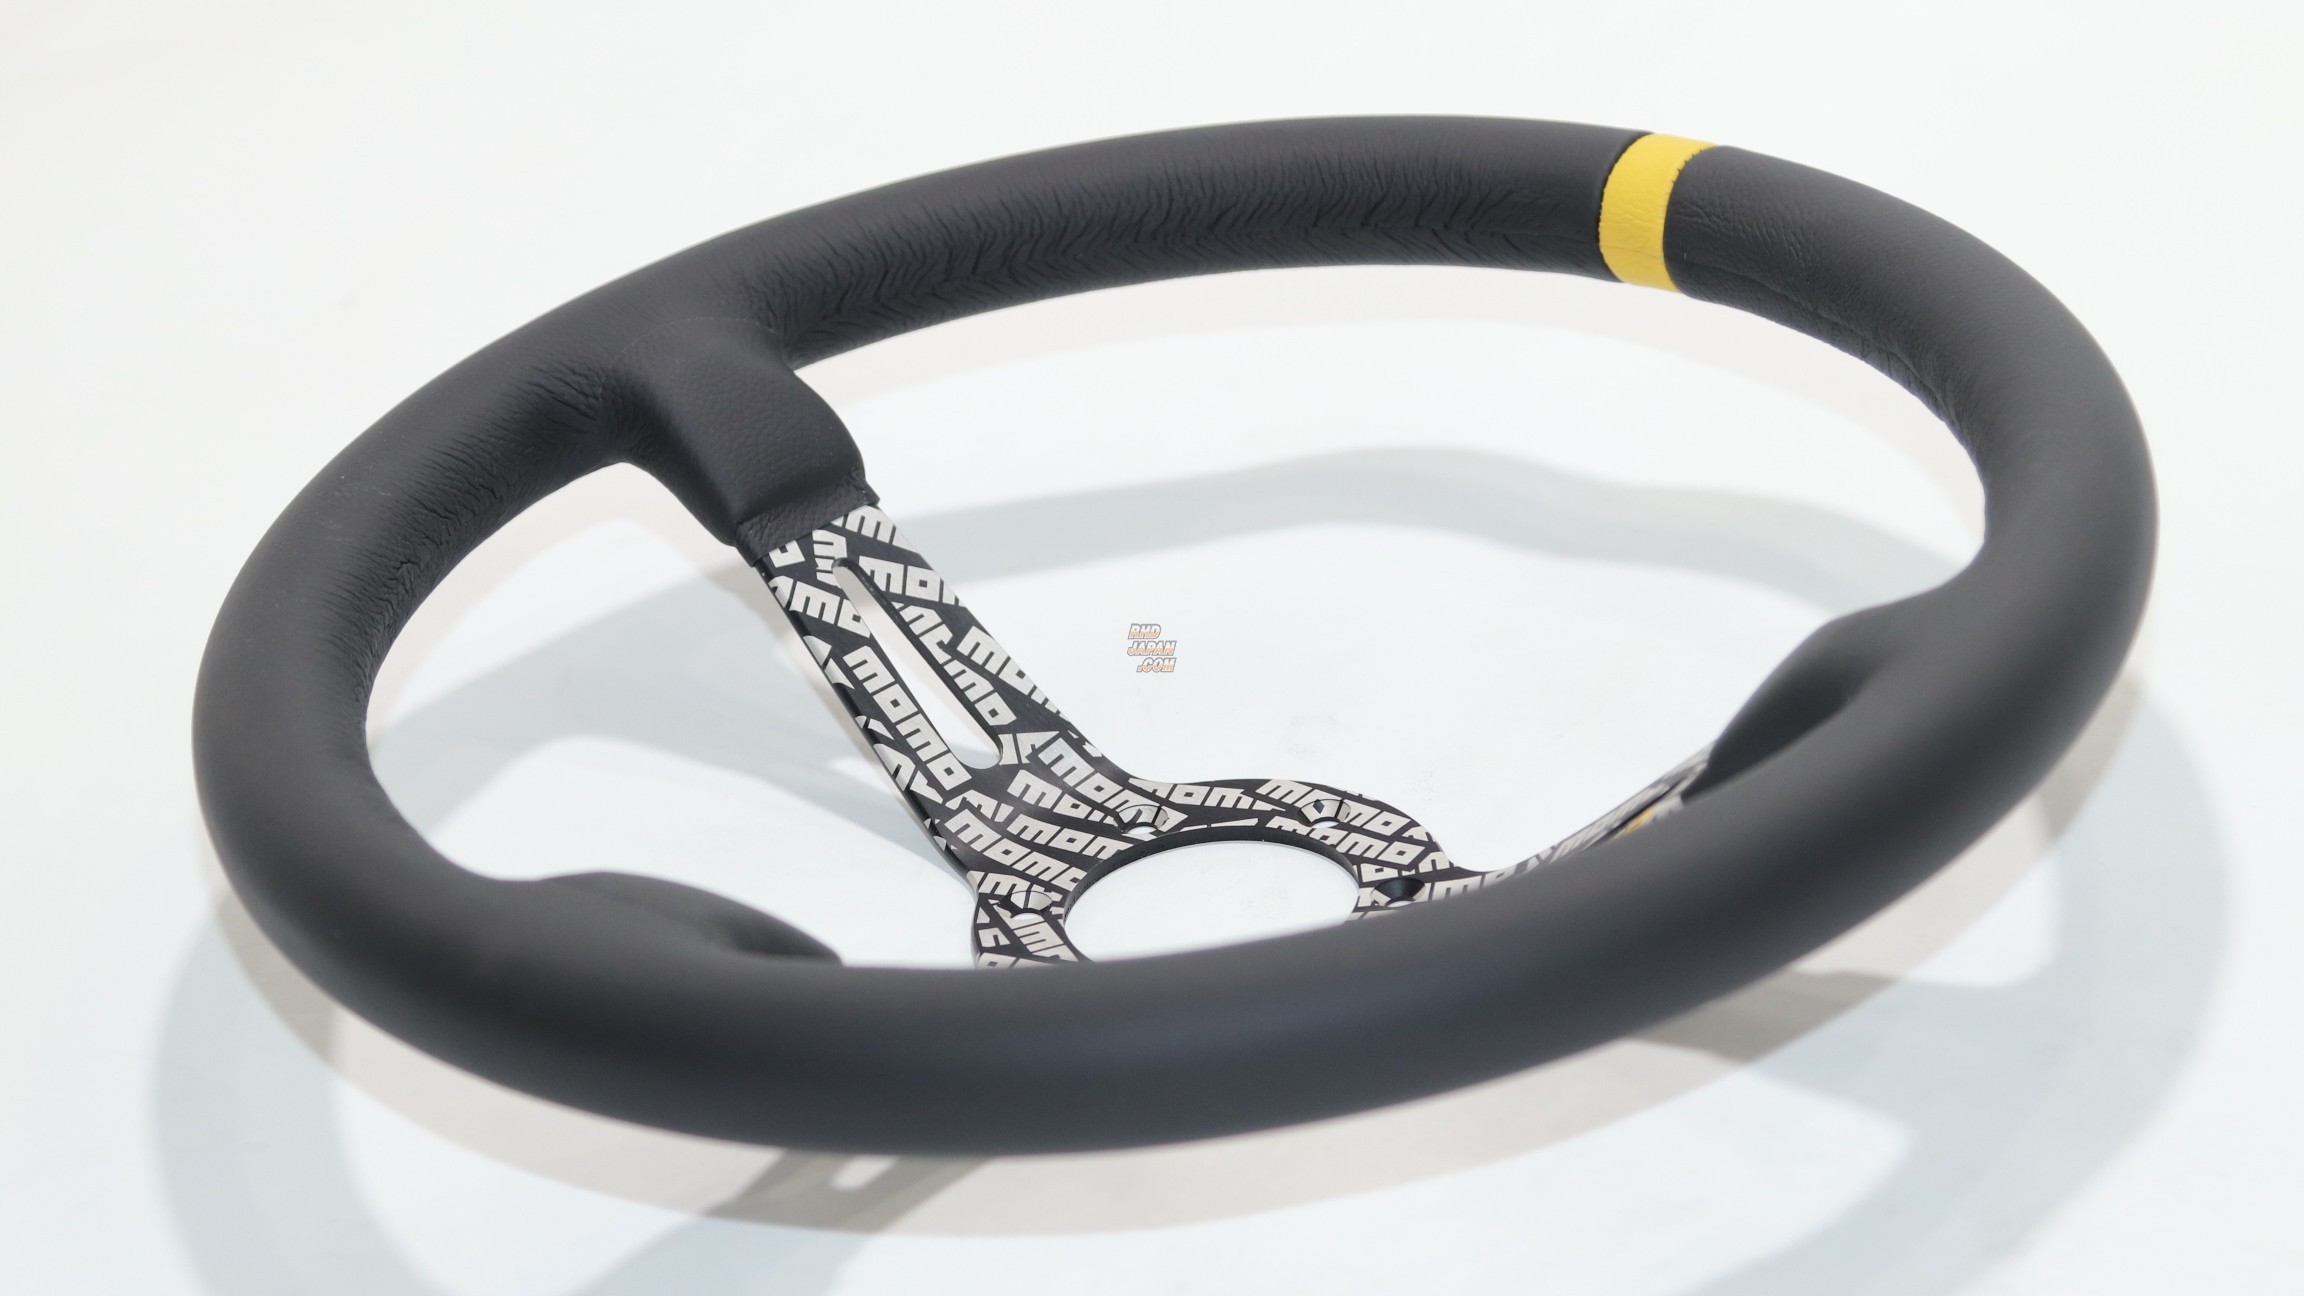 MOMO Steering Wheel - Ultra Japan Black Leather